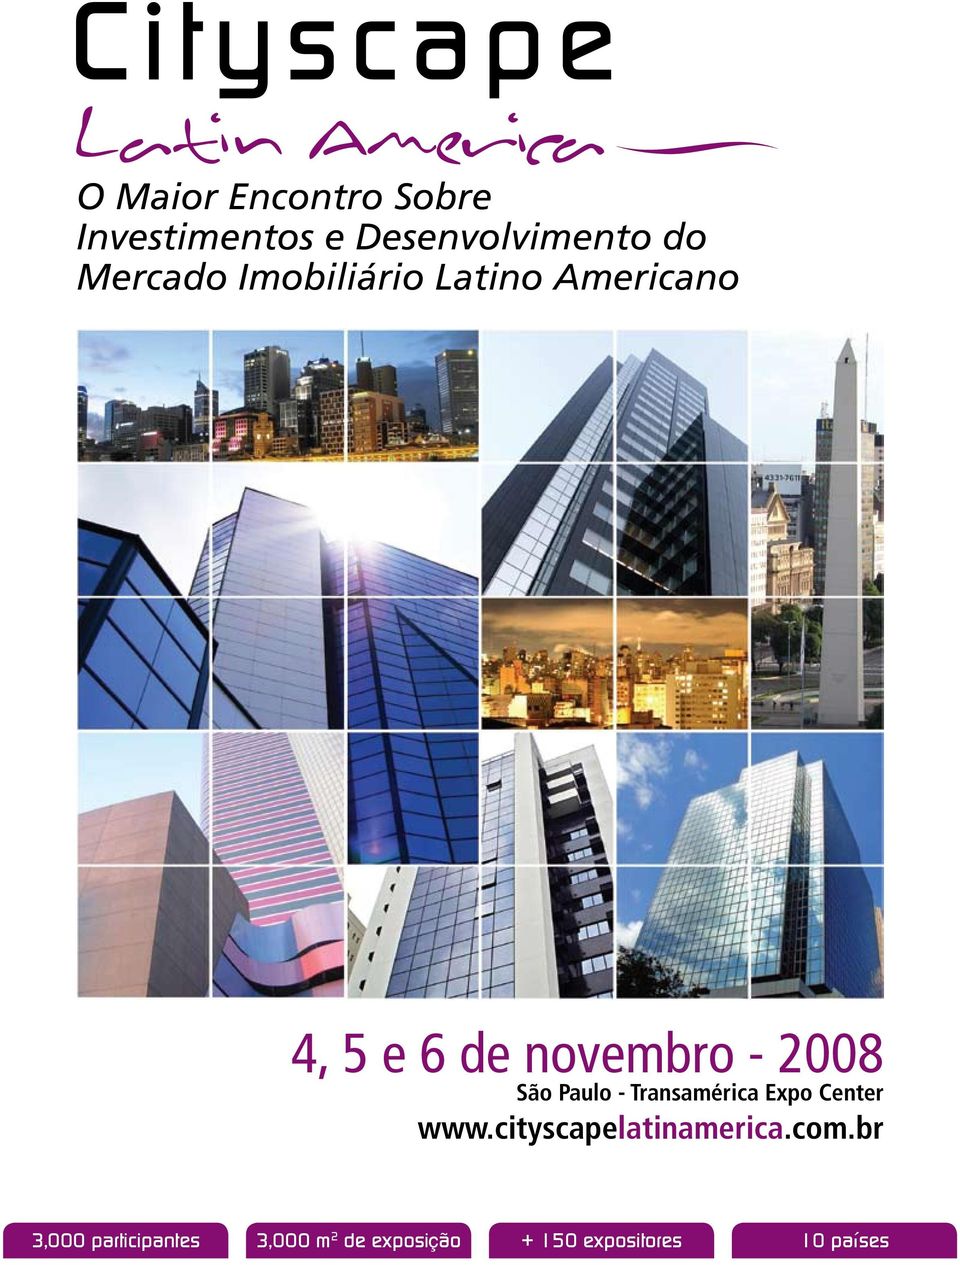 Paulo - Transamérica Expo Center www.cityscapelatinamerica.com.